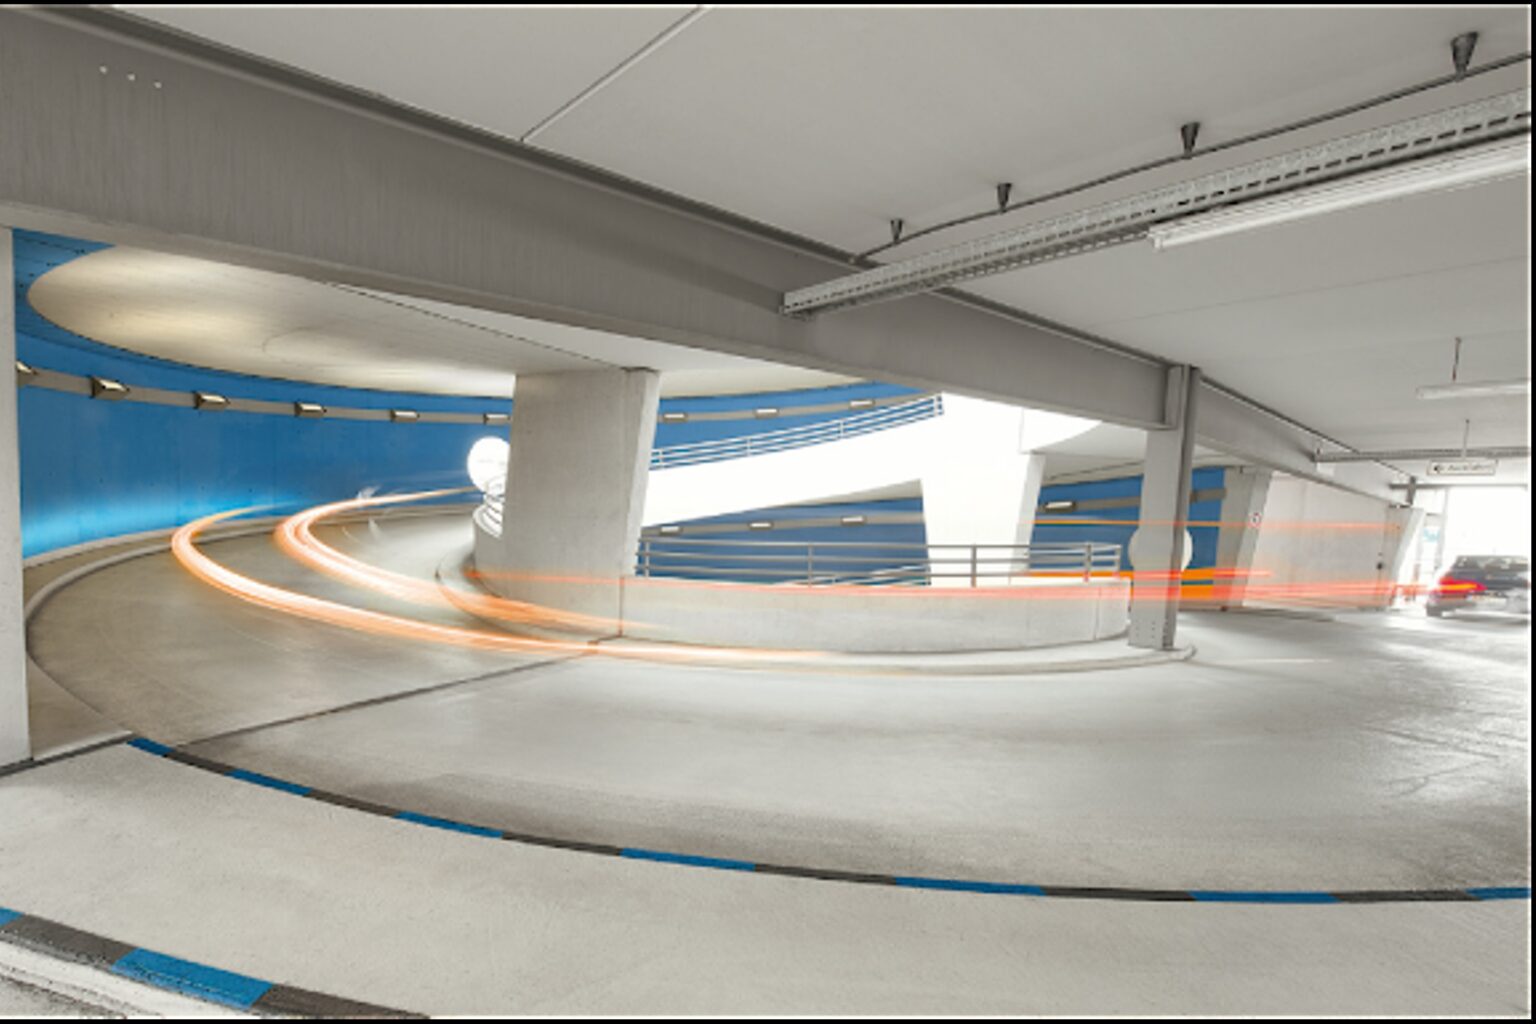 Poburski Futura bringt all seine Kompetenz und Innovationskraft ein, wenn es um den Bau, die Instandsetzung oder Sanierung von Fahrbahnbelägen in Parkhäusern geht.